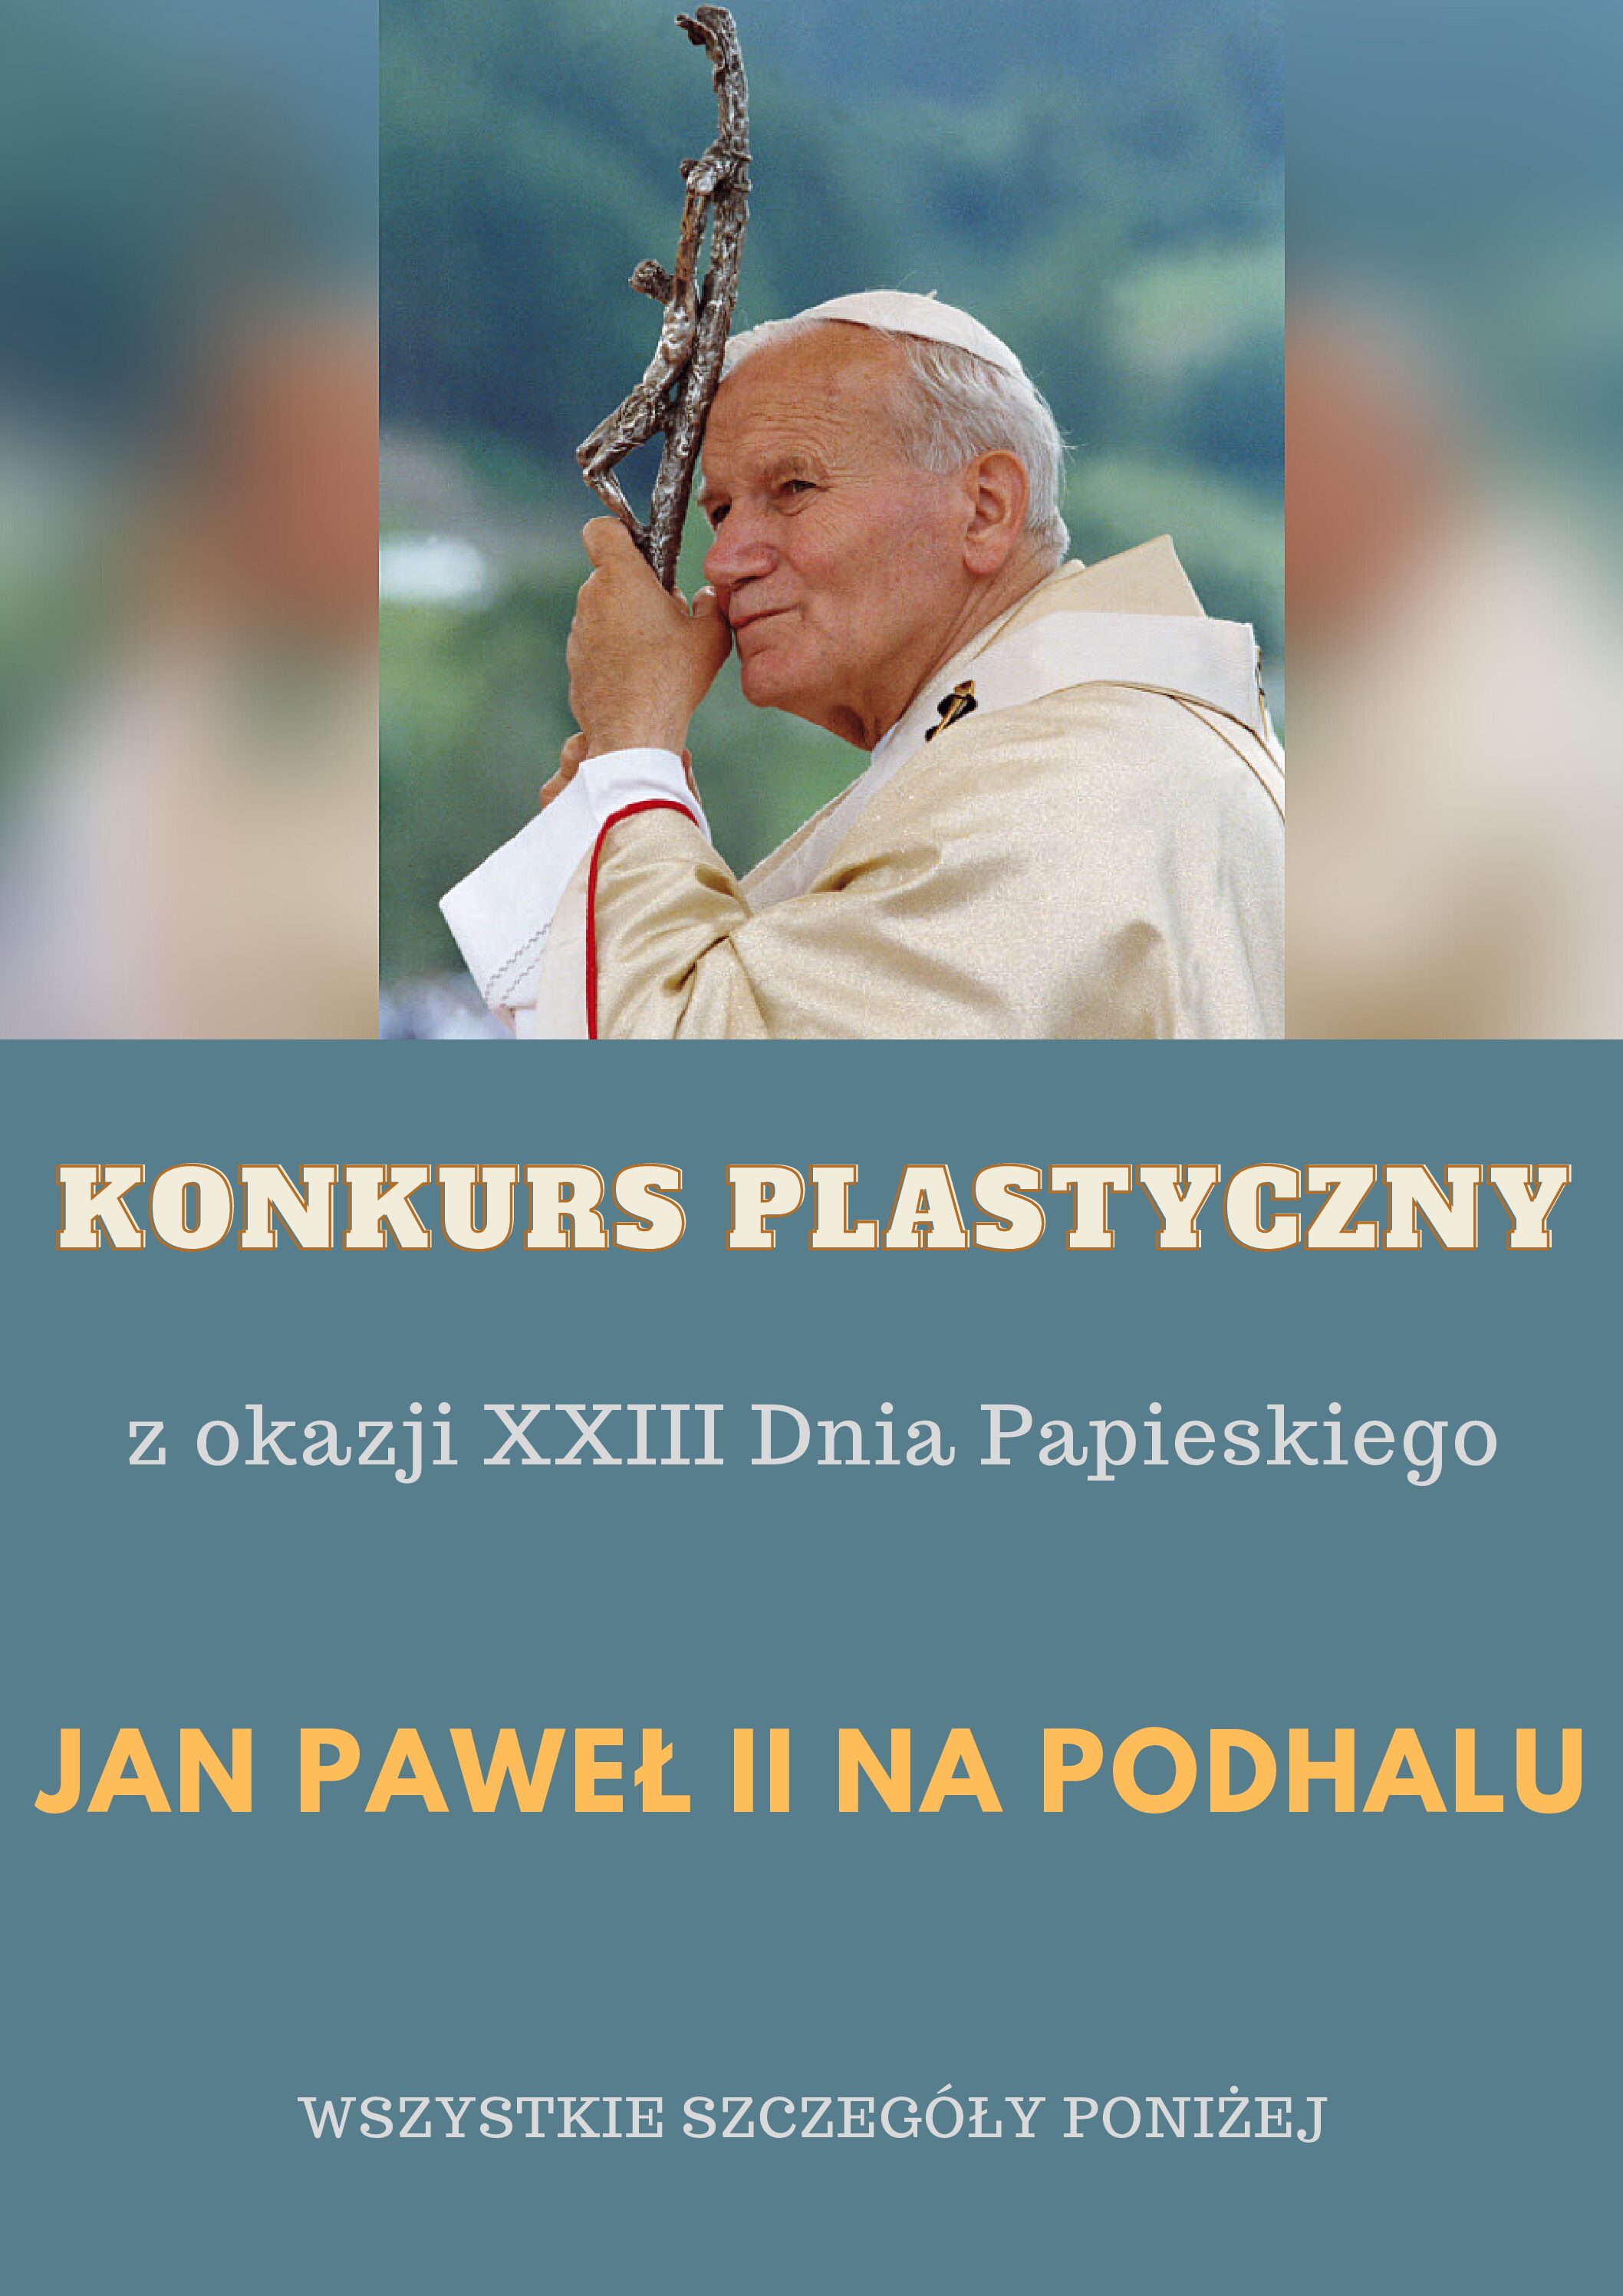 Jan Paweł II na Podhalu.